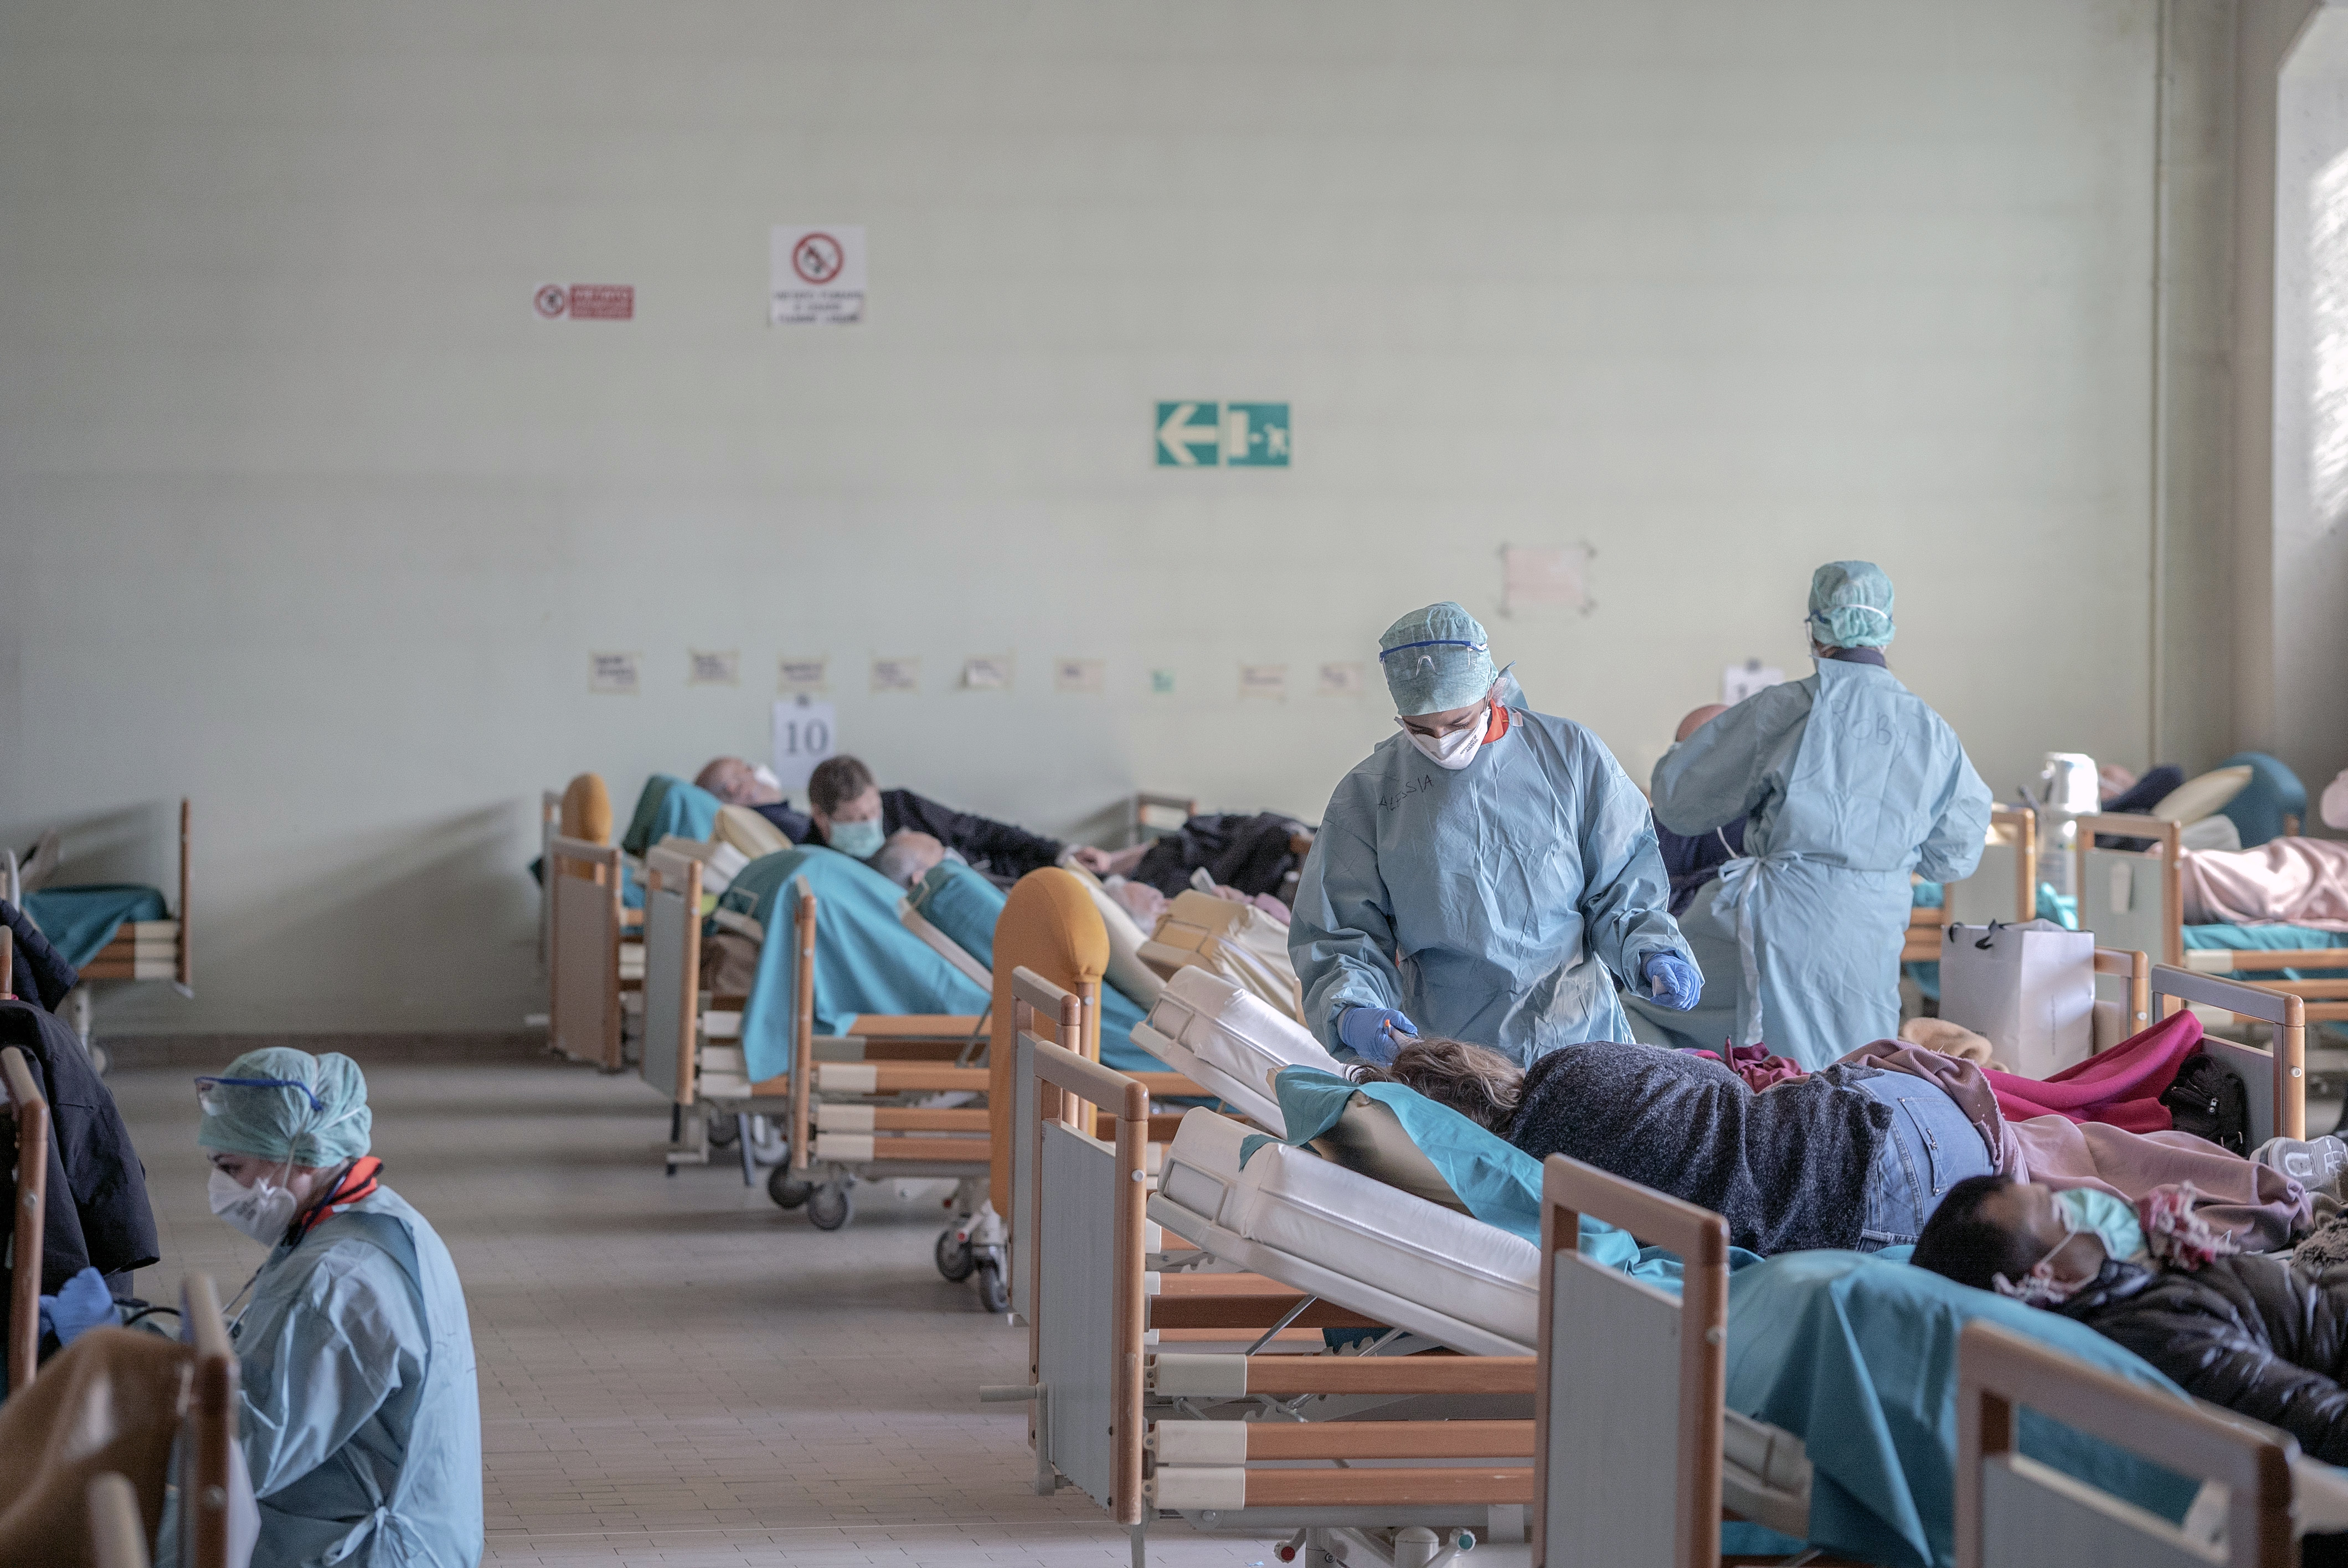 Una sala de emergencia improvisada, montada para lidiar con el brote de coronavirus en Brescia, Italia, el 16 de marzo de 2020. (Alessandro Grassani/The New York Times)

